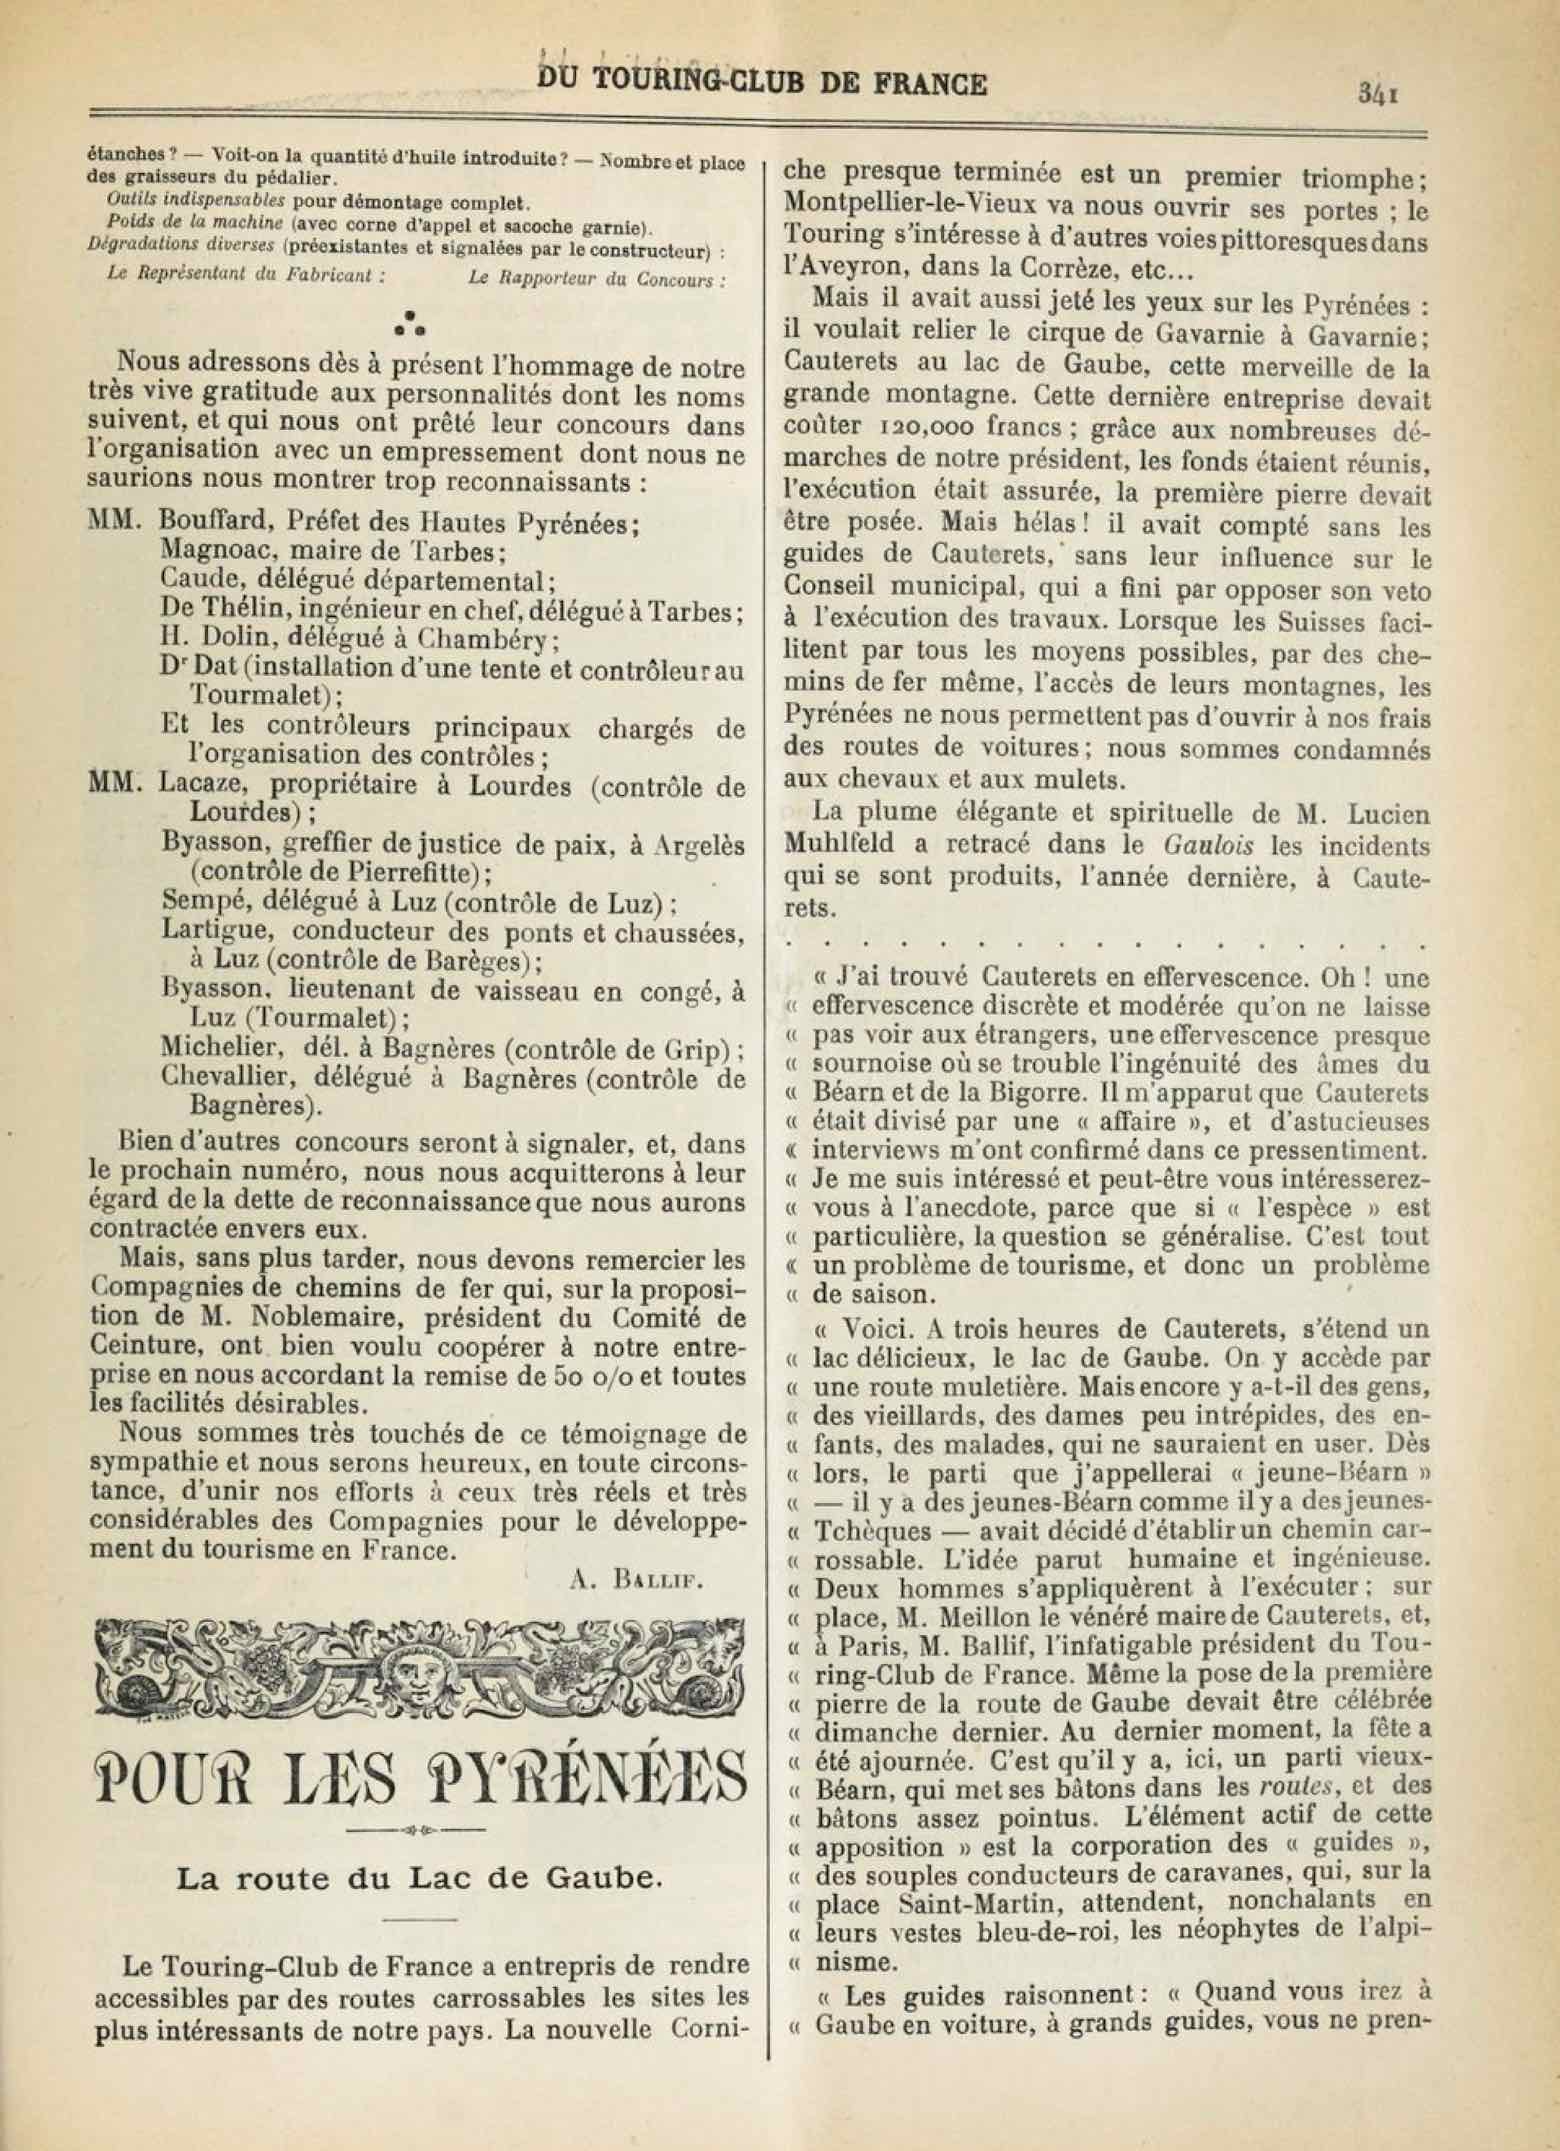 T.C.F. Revue Mensuelle August 1902 - Concours de Bicyclettes de Tourisme (part II) scan 2 main image